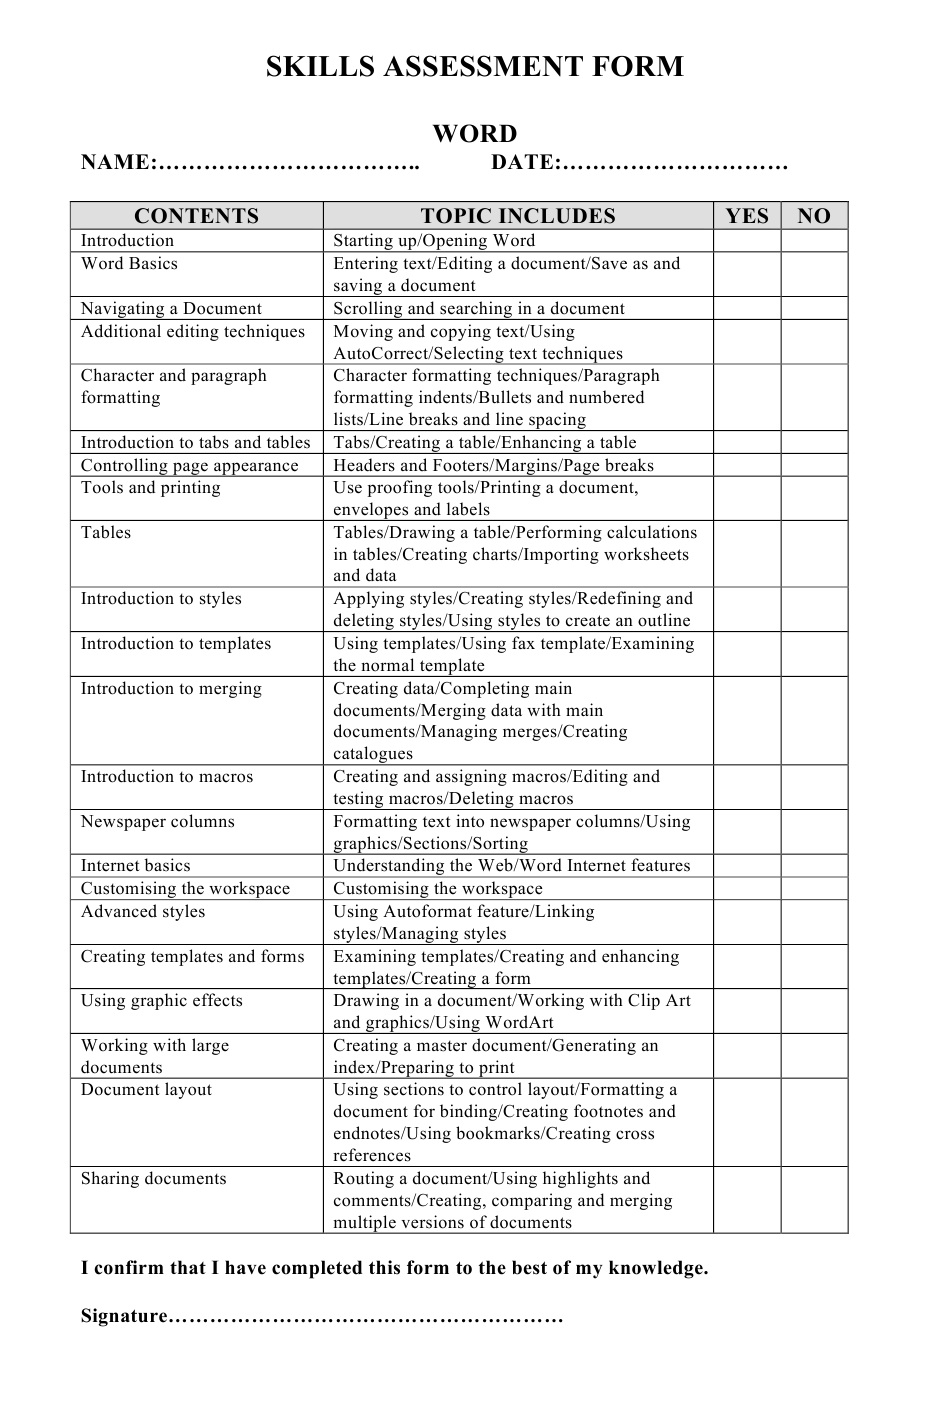 Skills Assessment Form Download Printable PDF Templateroller